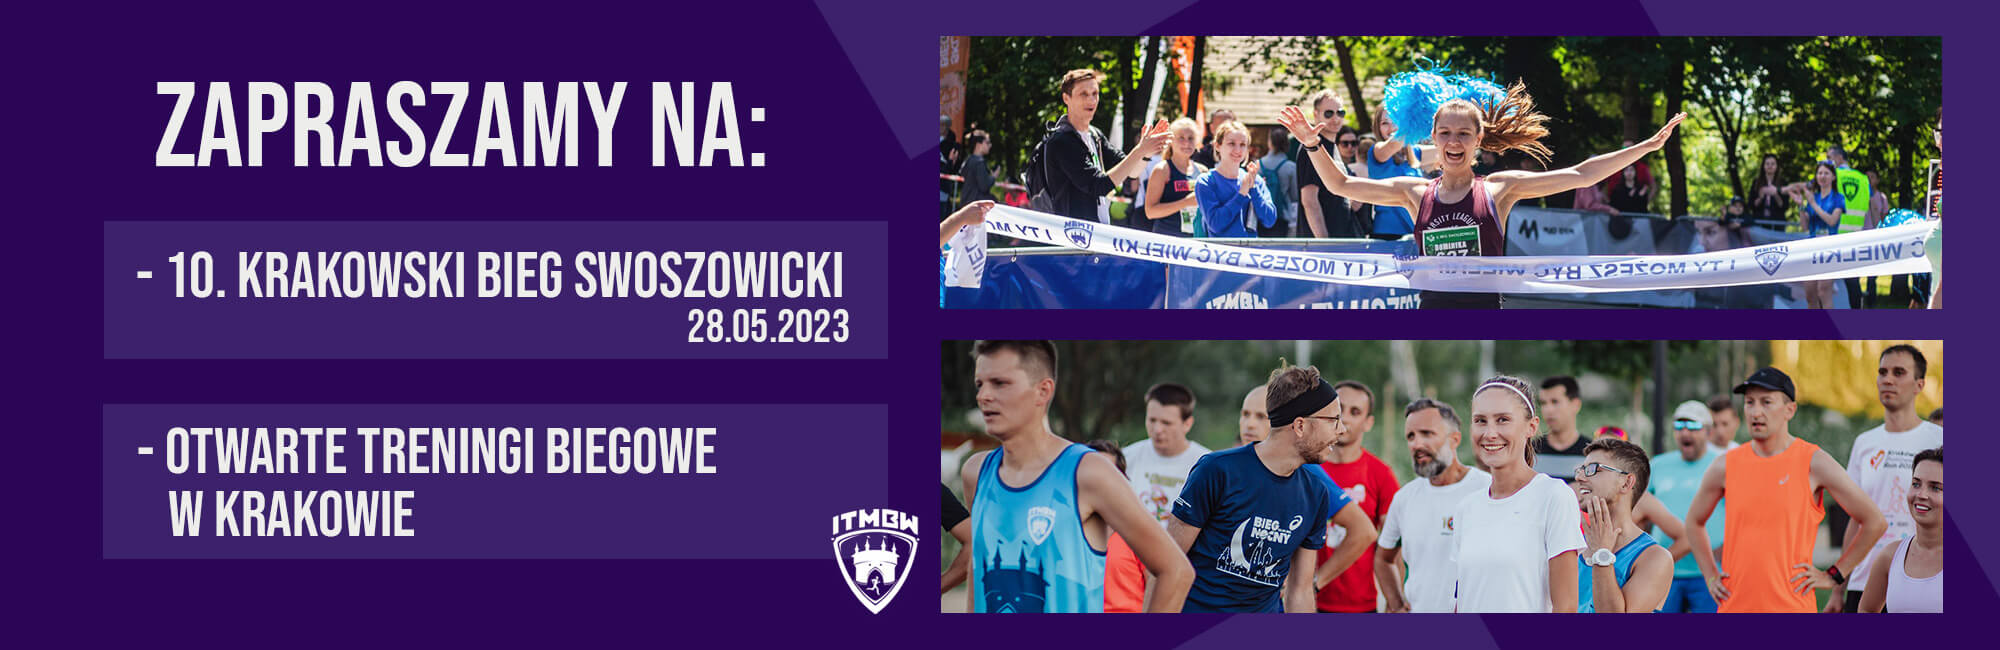 Zapraszamy na 10. Krakowski Bieg Swoszowicki i otwarte treningi biegowe w Krakowie